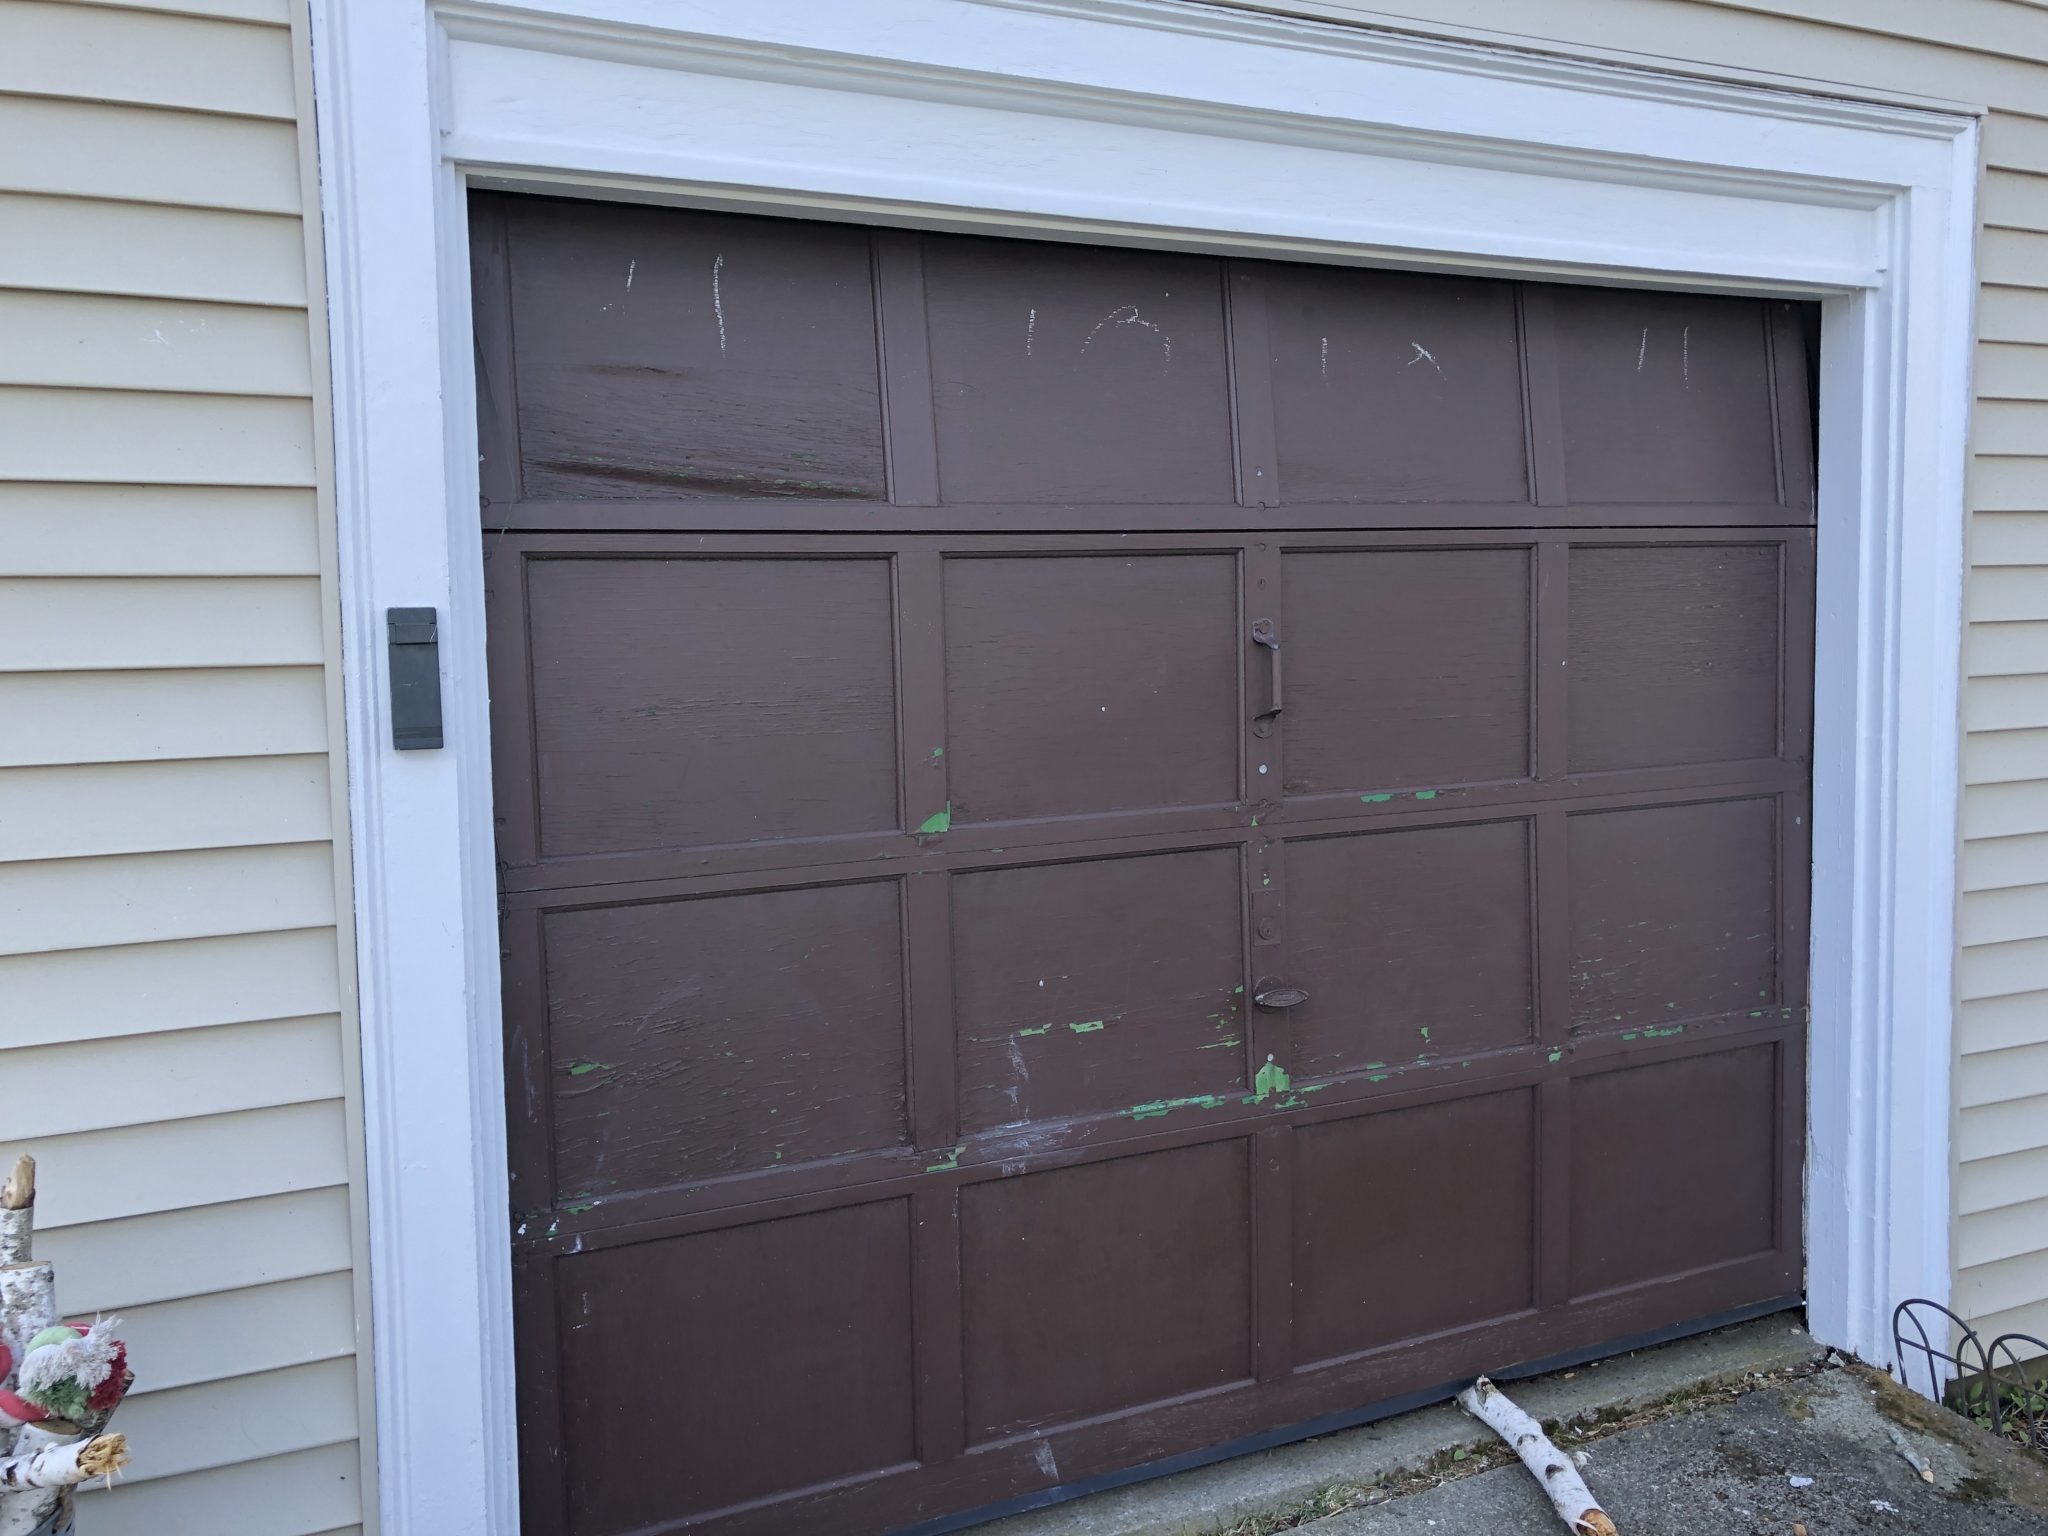 Good Bye Garage Doors, Hello Barn Doors! - Jordecor